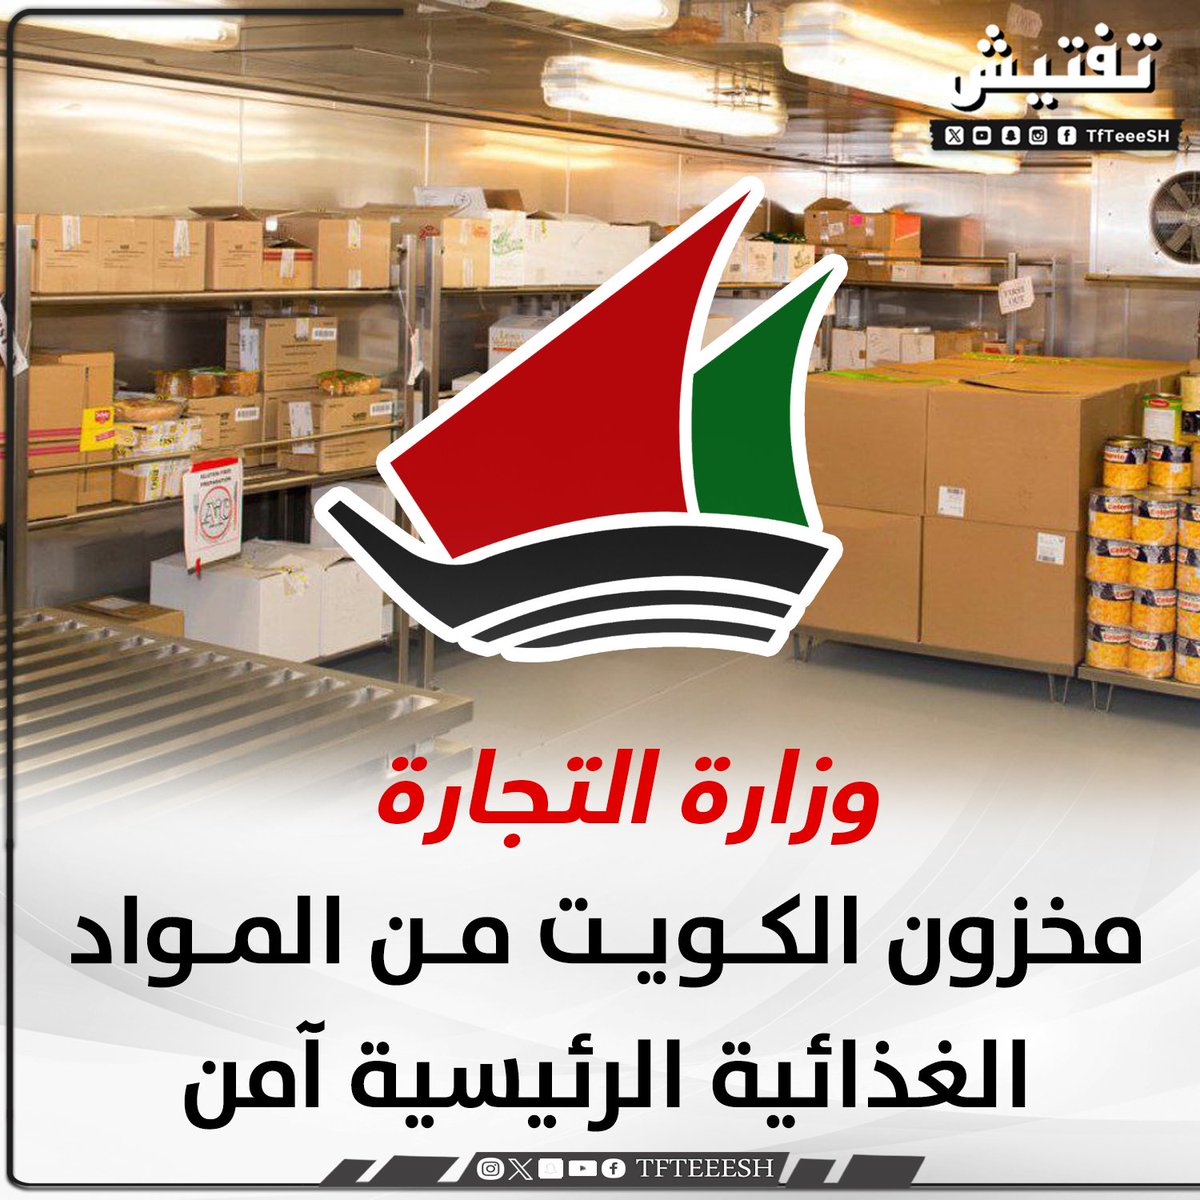 وزارة التجارة : • مخزون الكويت من المواد الغذائية الرئيسية آمن يكفي لمدة تتراوح ما بين 6 أشهر إلى عام . • خطط لدعم ومراقبة الأسواق في حال تطور الأوضاع في المنطقة .